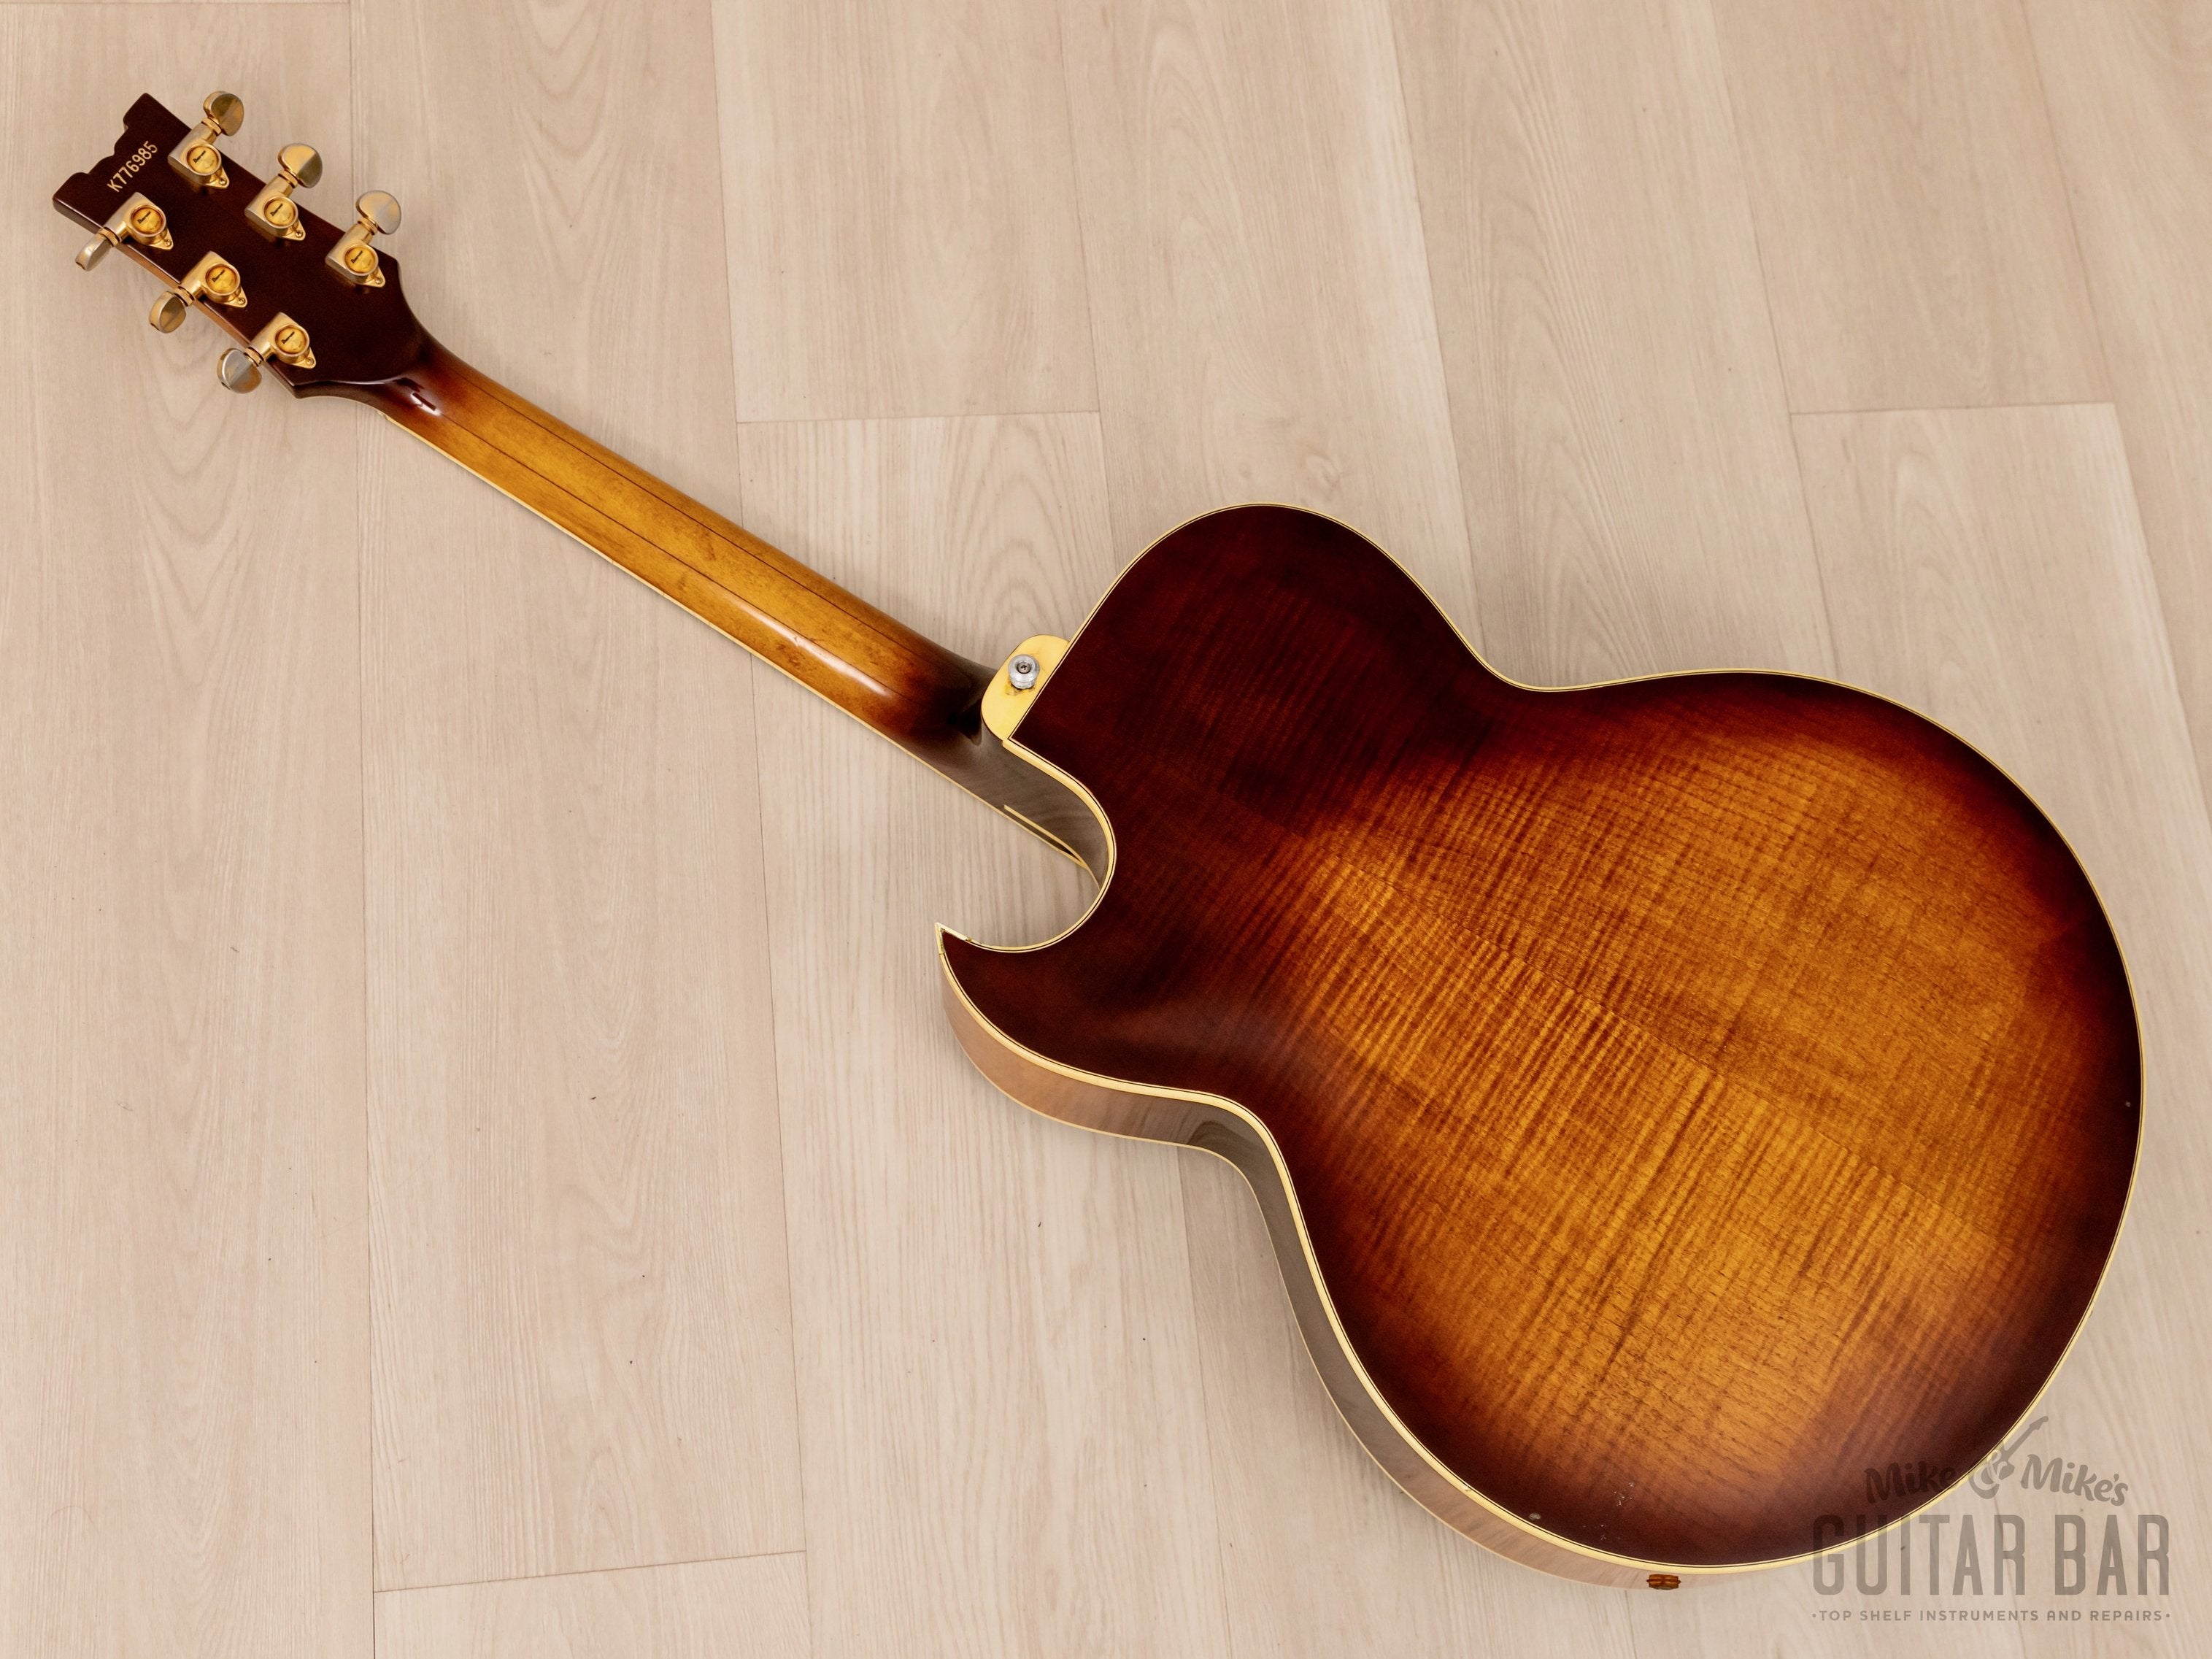 1977 Ibanez Artist 2635 Vintage Archtop Guitar Antique Violin w/ Maxon Super 80 Flying Fingers, Case